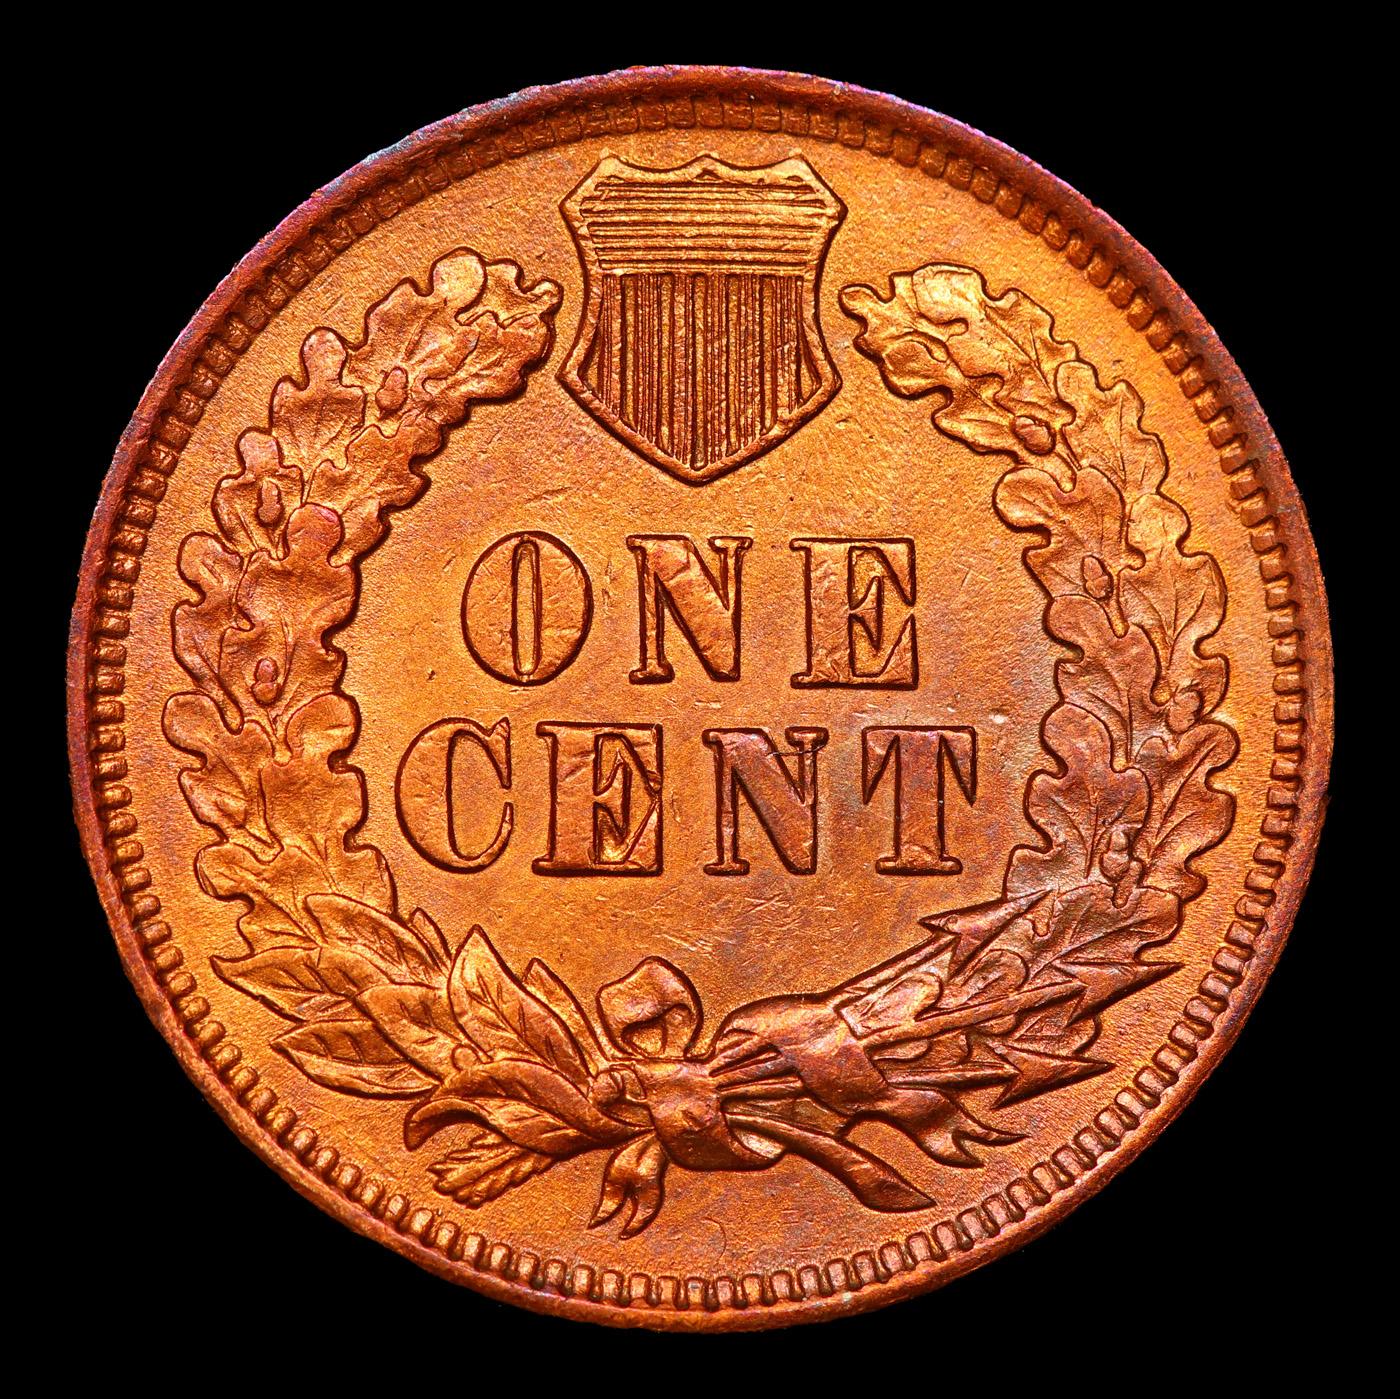 1905 Indian Cent 1c Grades Select Unc RB